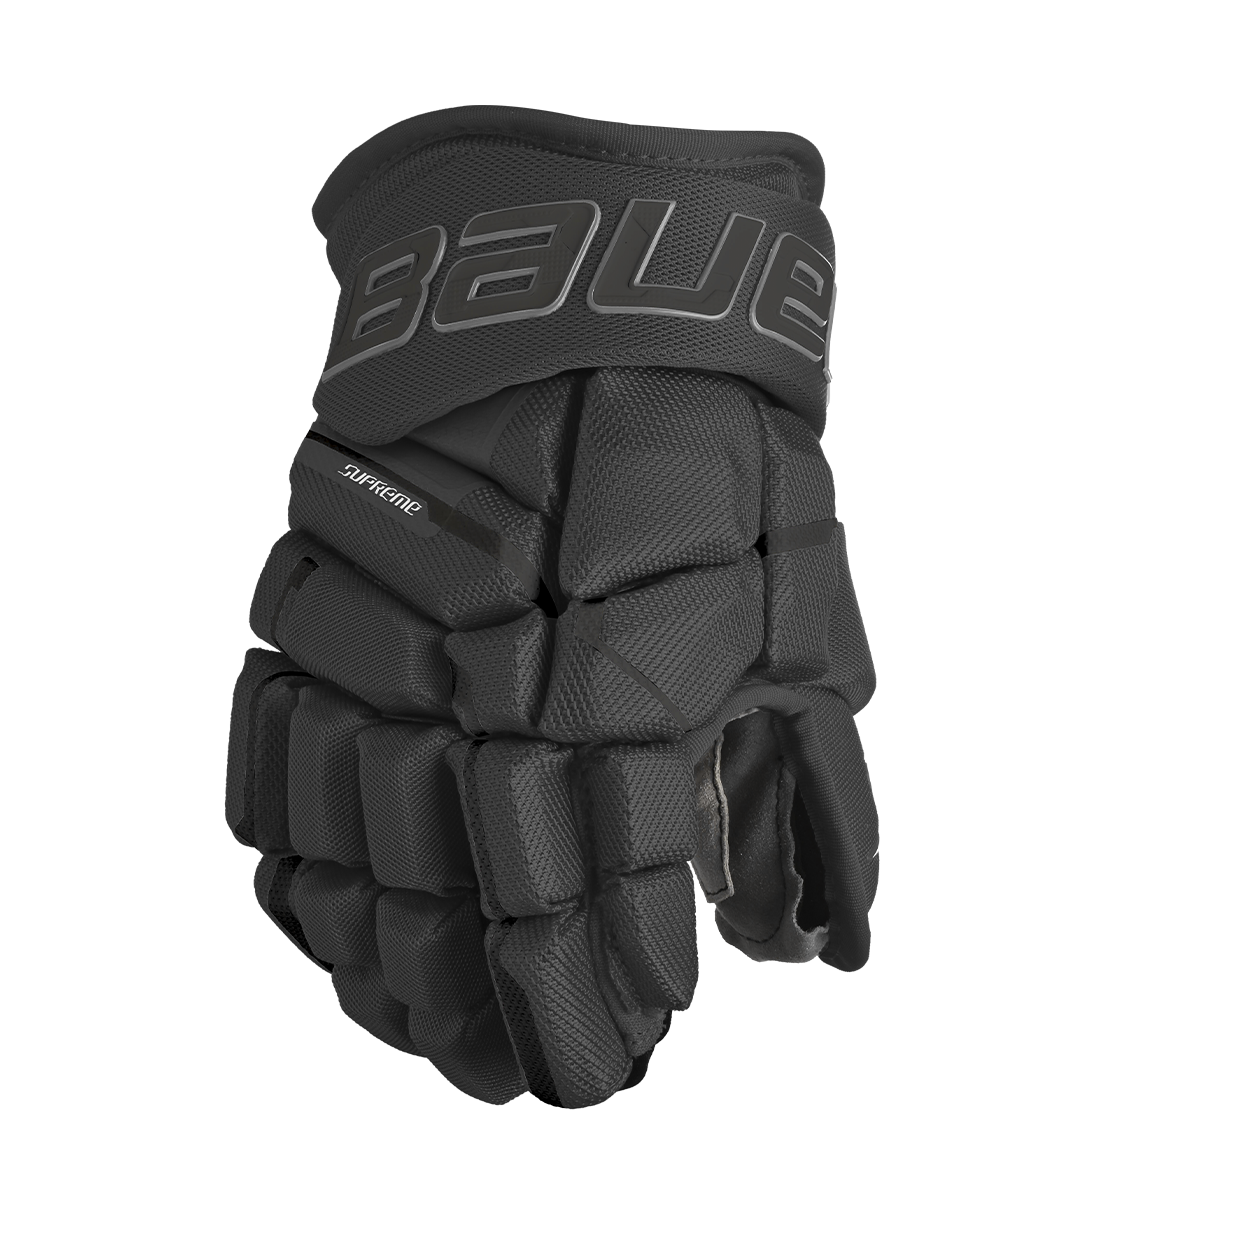 lululemon athletica Fashion Gloves